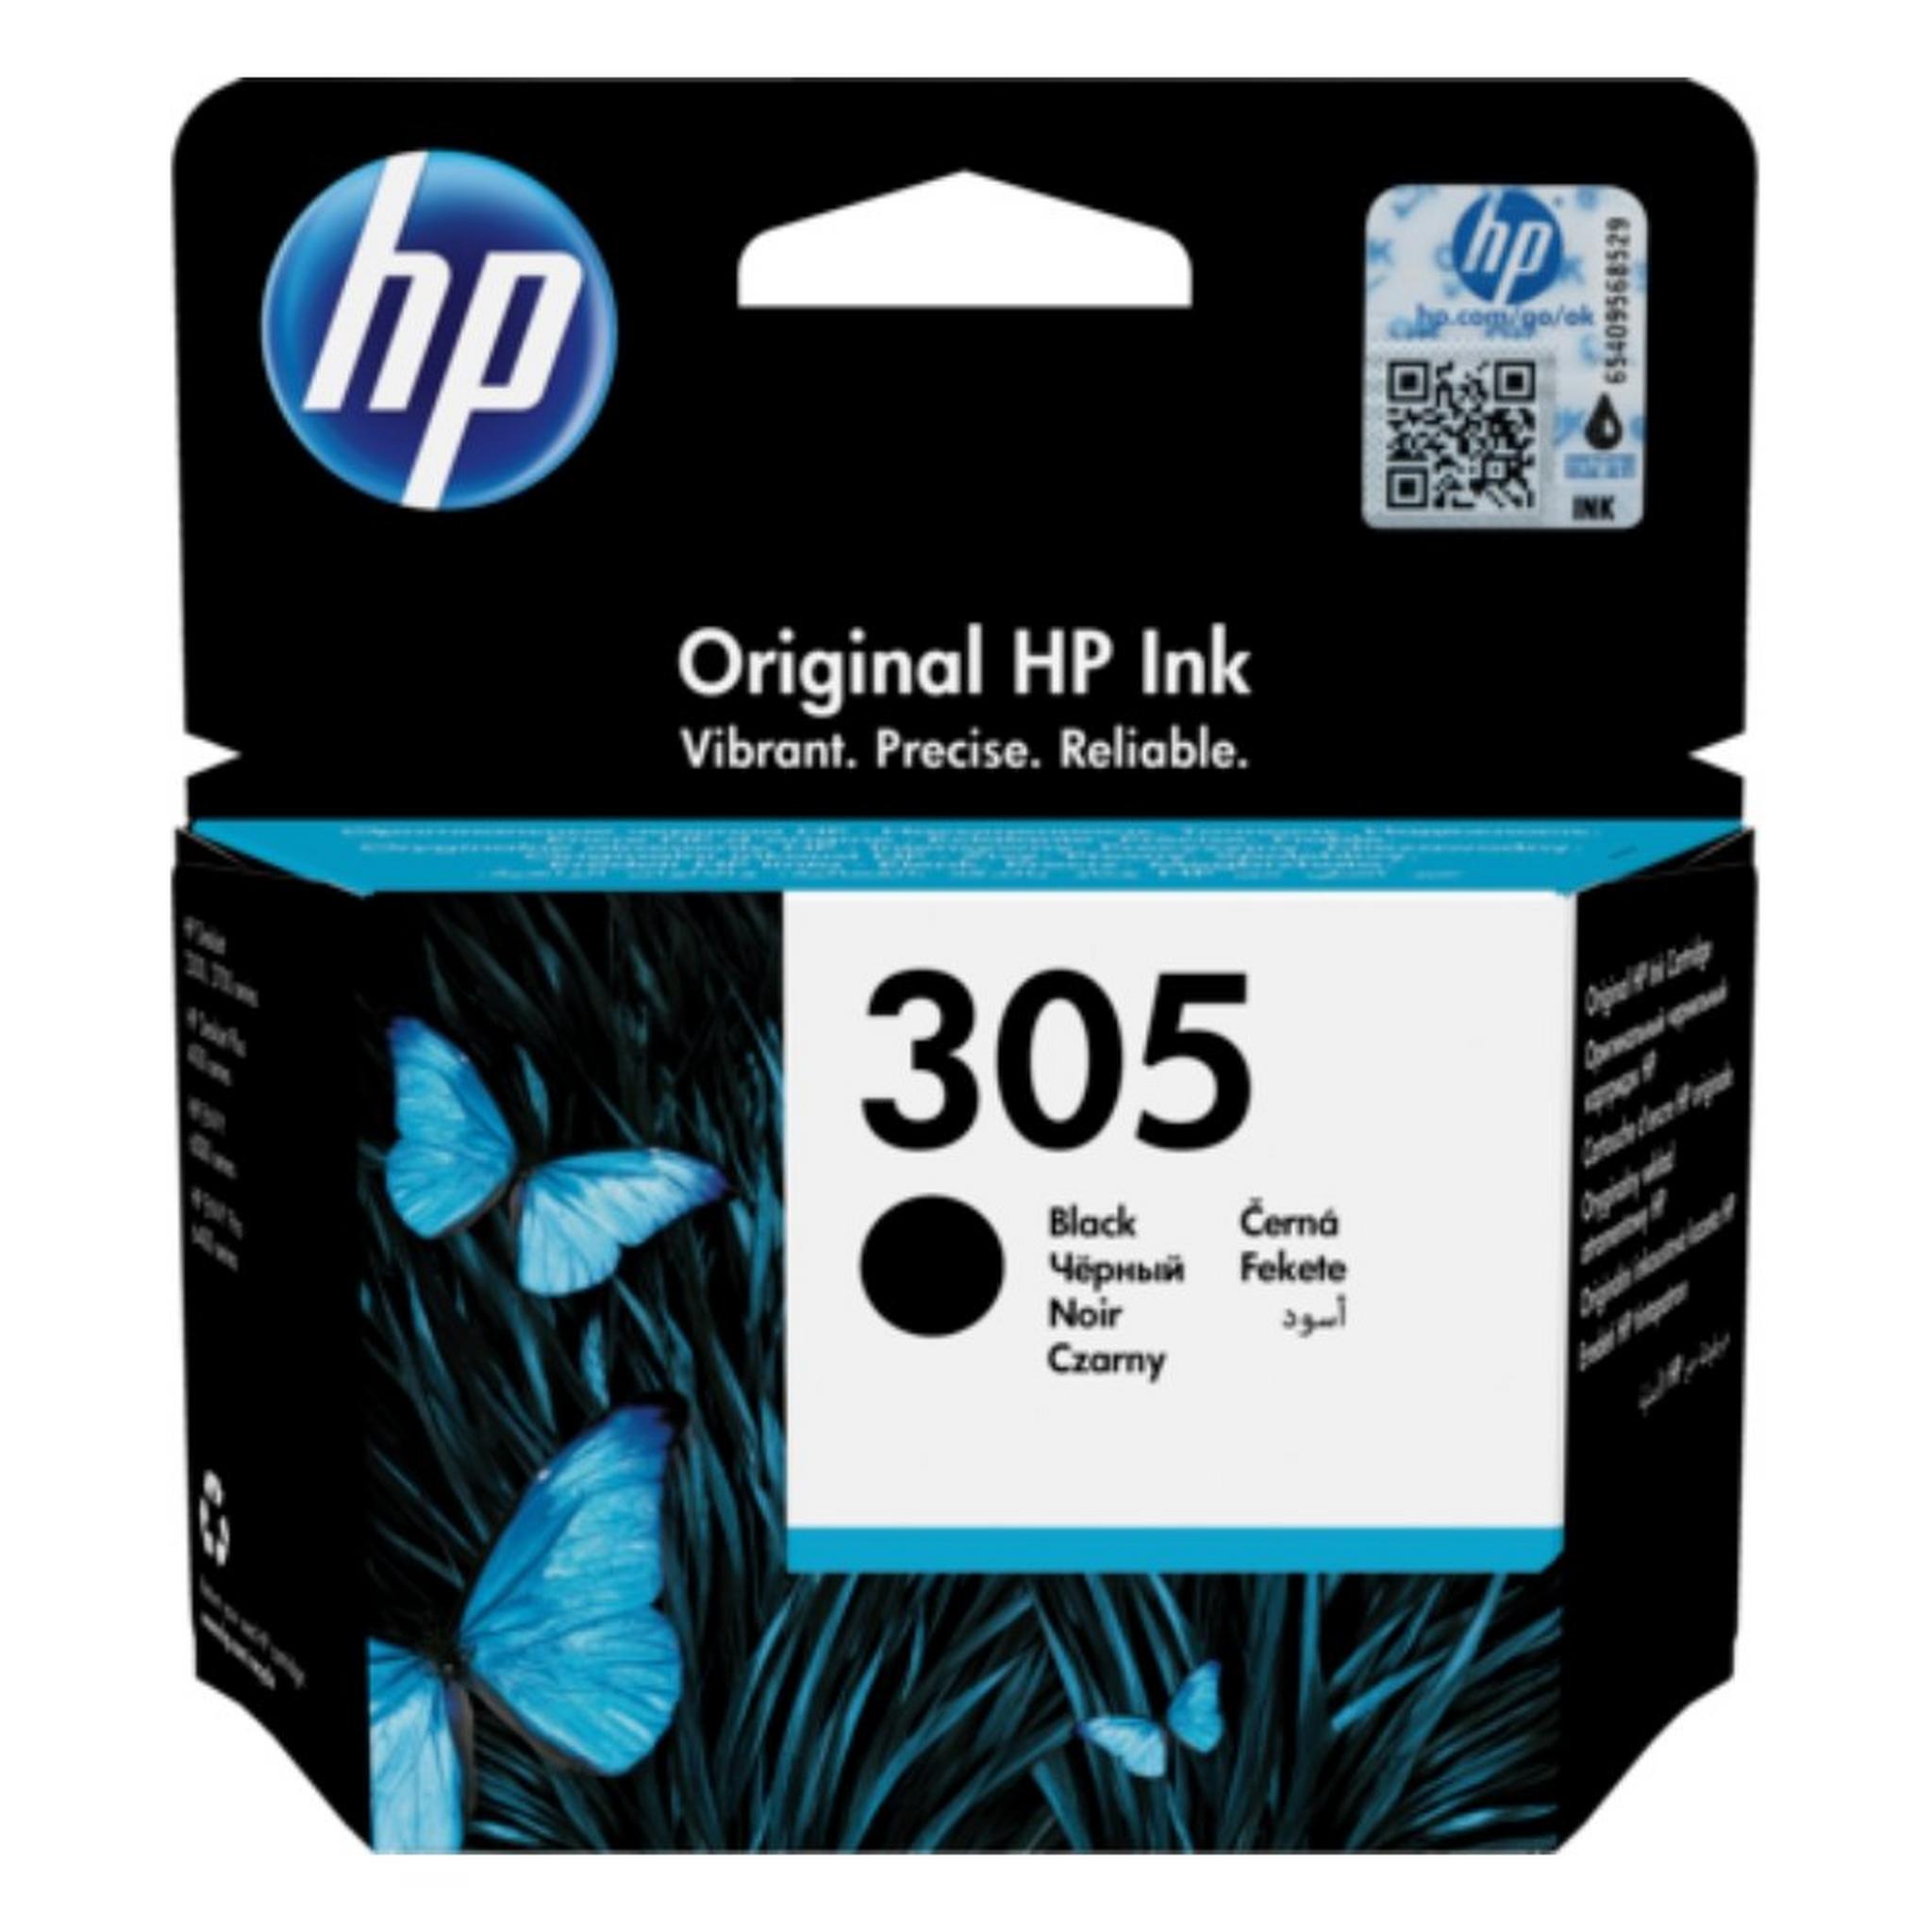 HP 305 Original Black Ink Cartridge (3YM61AE)